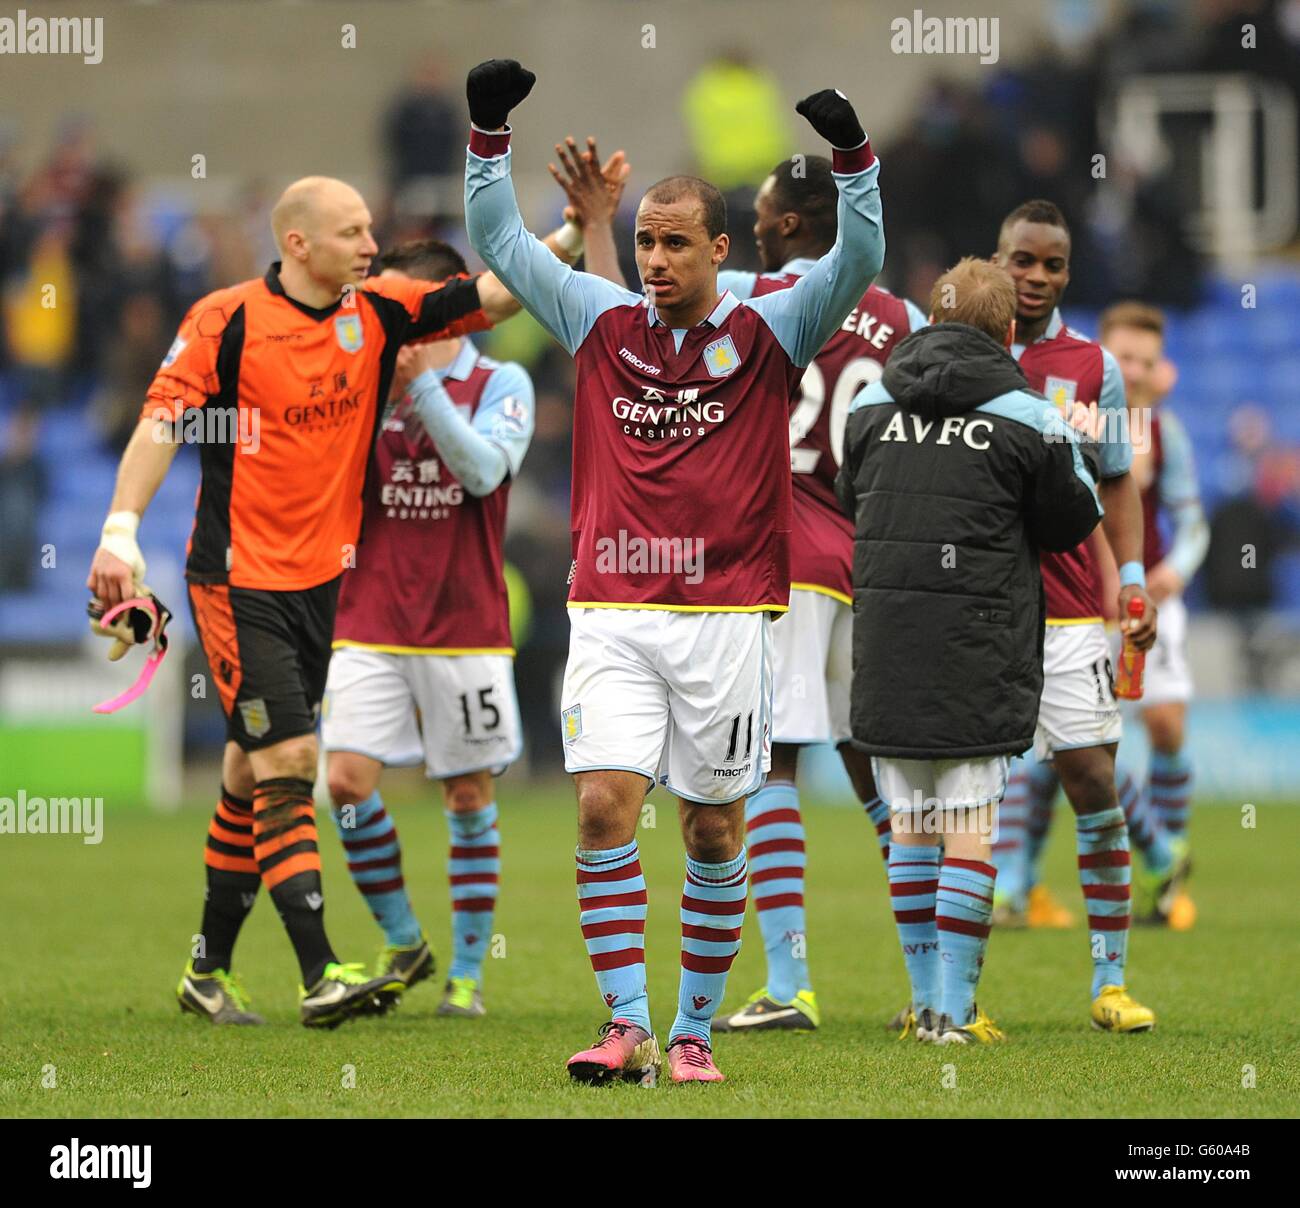 Calcio - Barclays Premier League - Reading v Aston Villa - Stadio Madjeski. Gabriel Agbonlahor di Aston Villa celebra la vittoria dopo il fischio finale Foto Stock